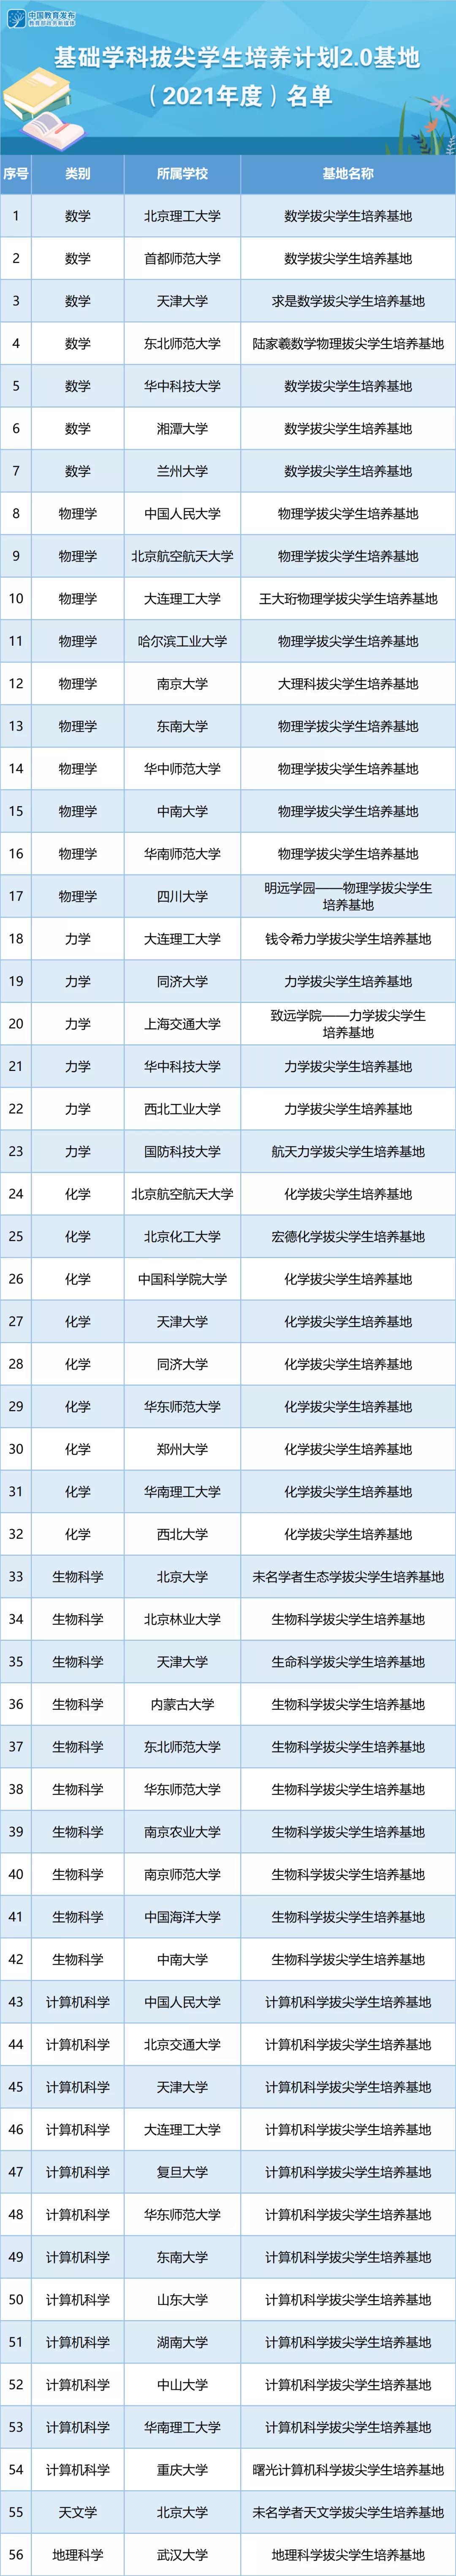 《中国基础学科拔尖学生培养计划2.0基地名单》